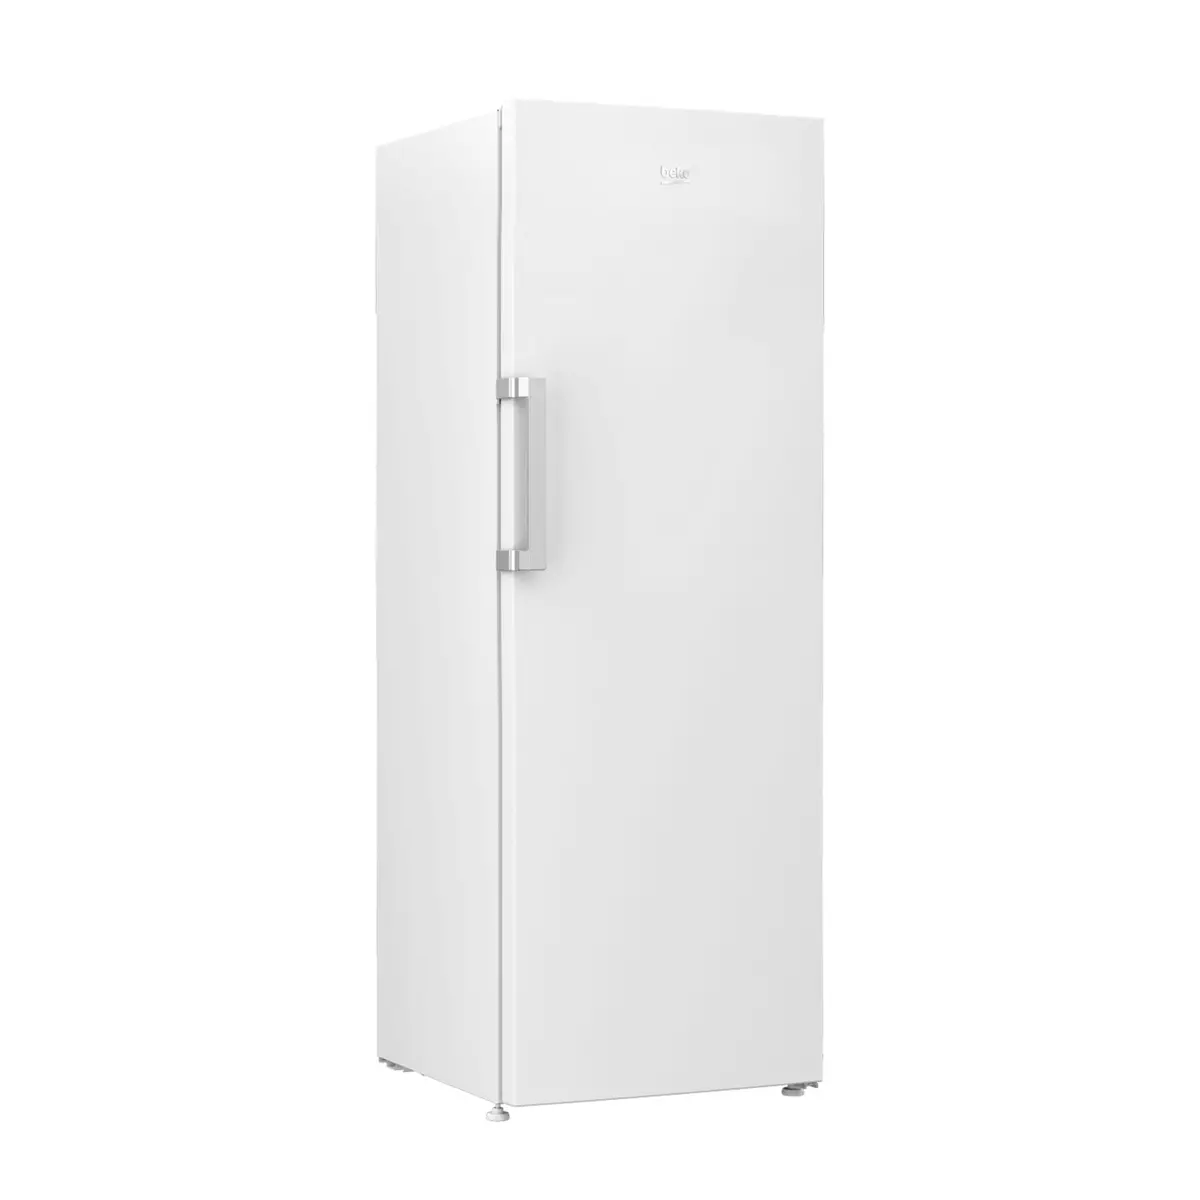 BEKO Réfrigérateur armoire RSSE415M23W, 367 L, Froid statique